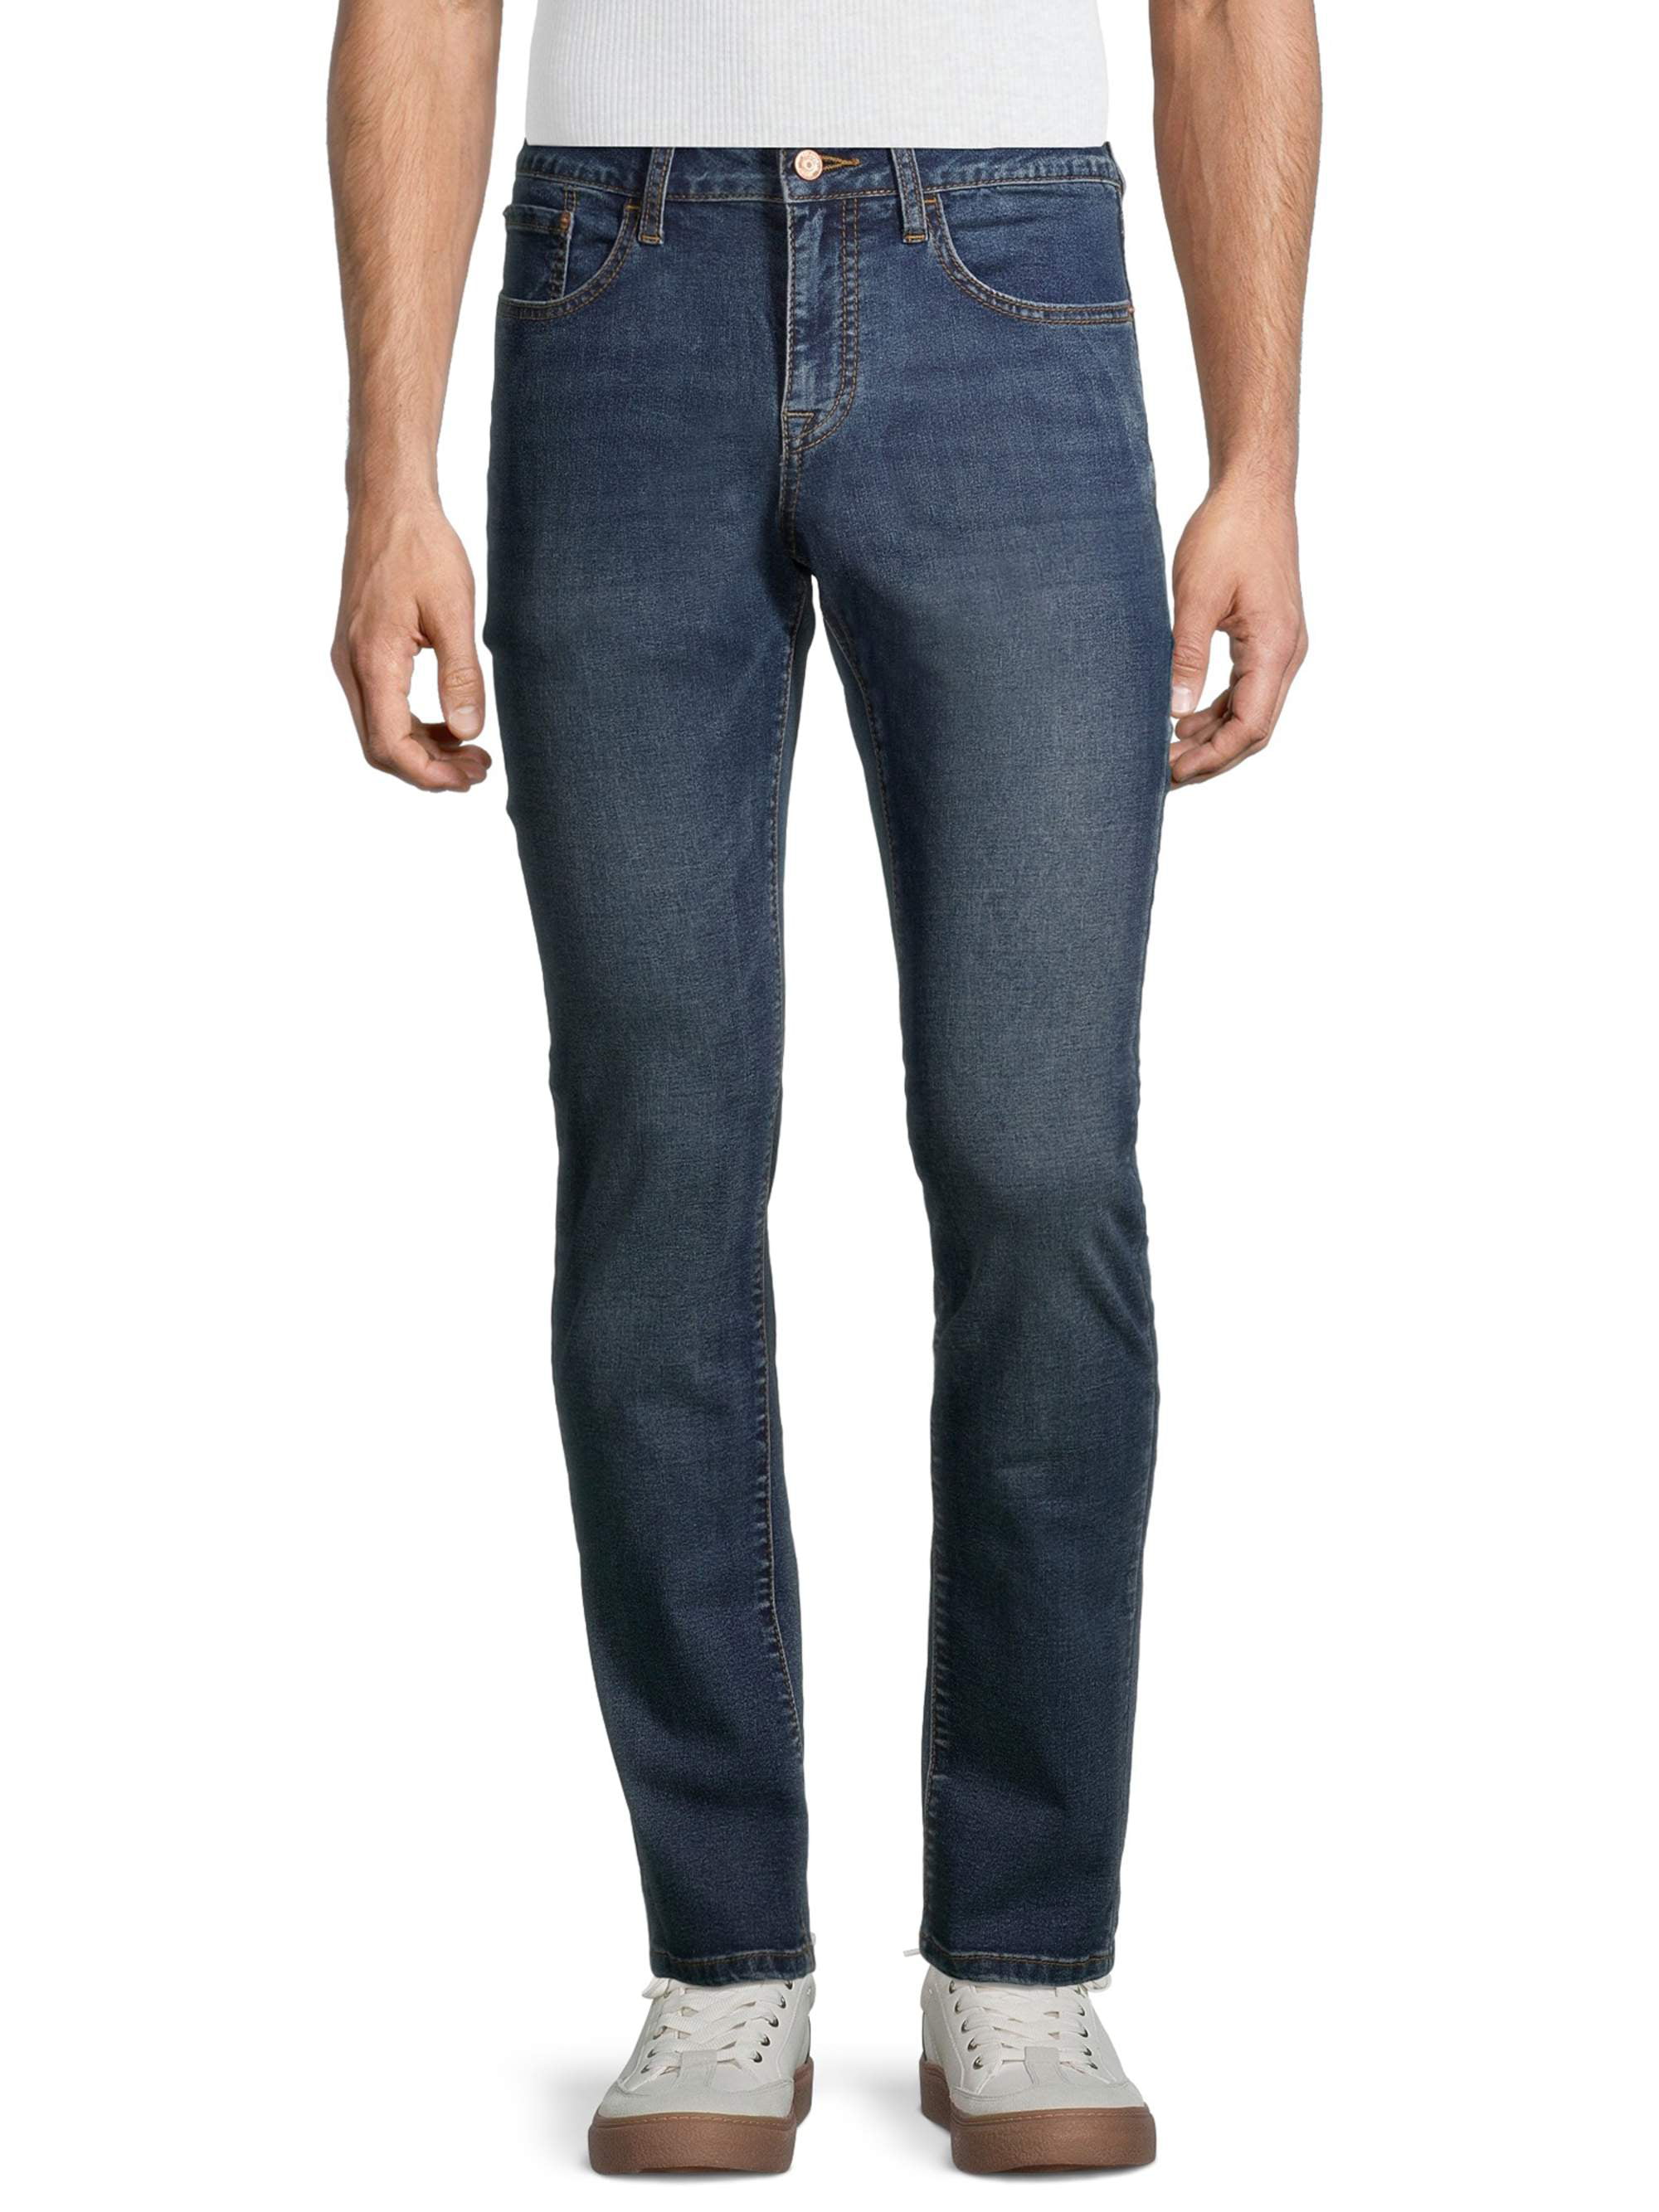 IZOD Men's Big and Tall Regular Fit Tapered Jeans - Walmart.com